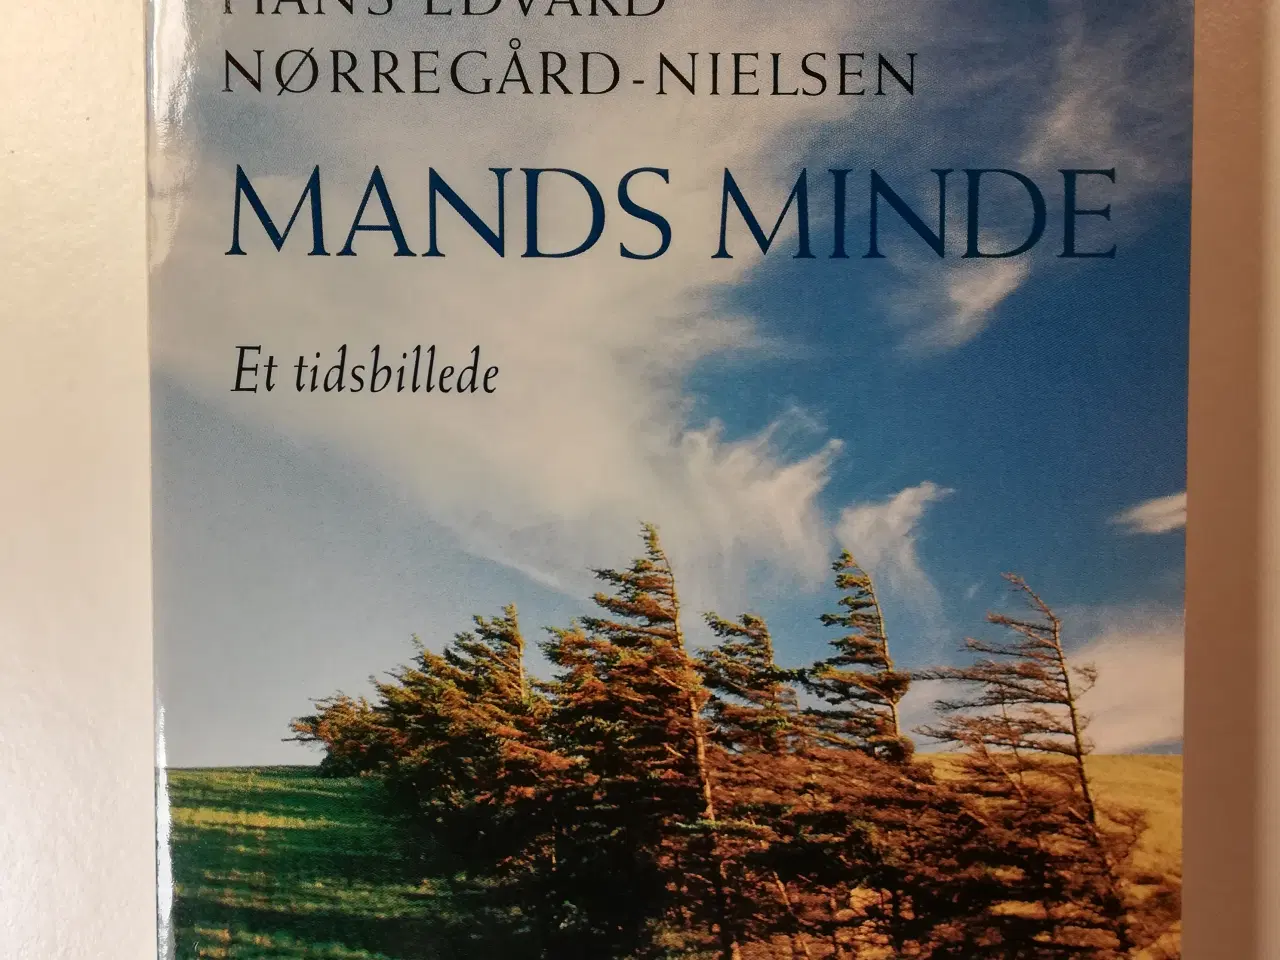 Billede 1 - Mands minde, af Hans Edvard Nørregård-Nielsen     